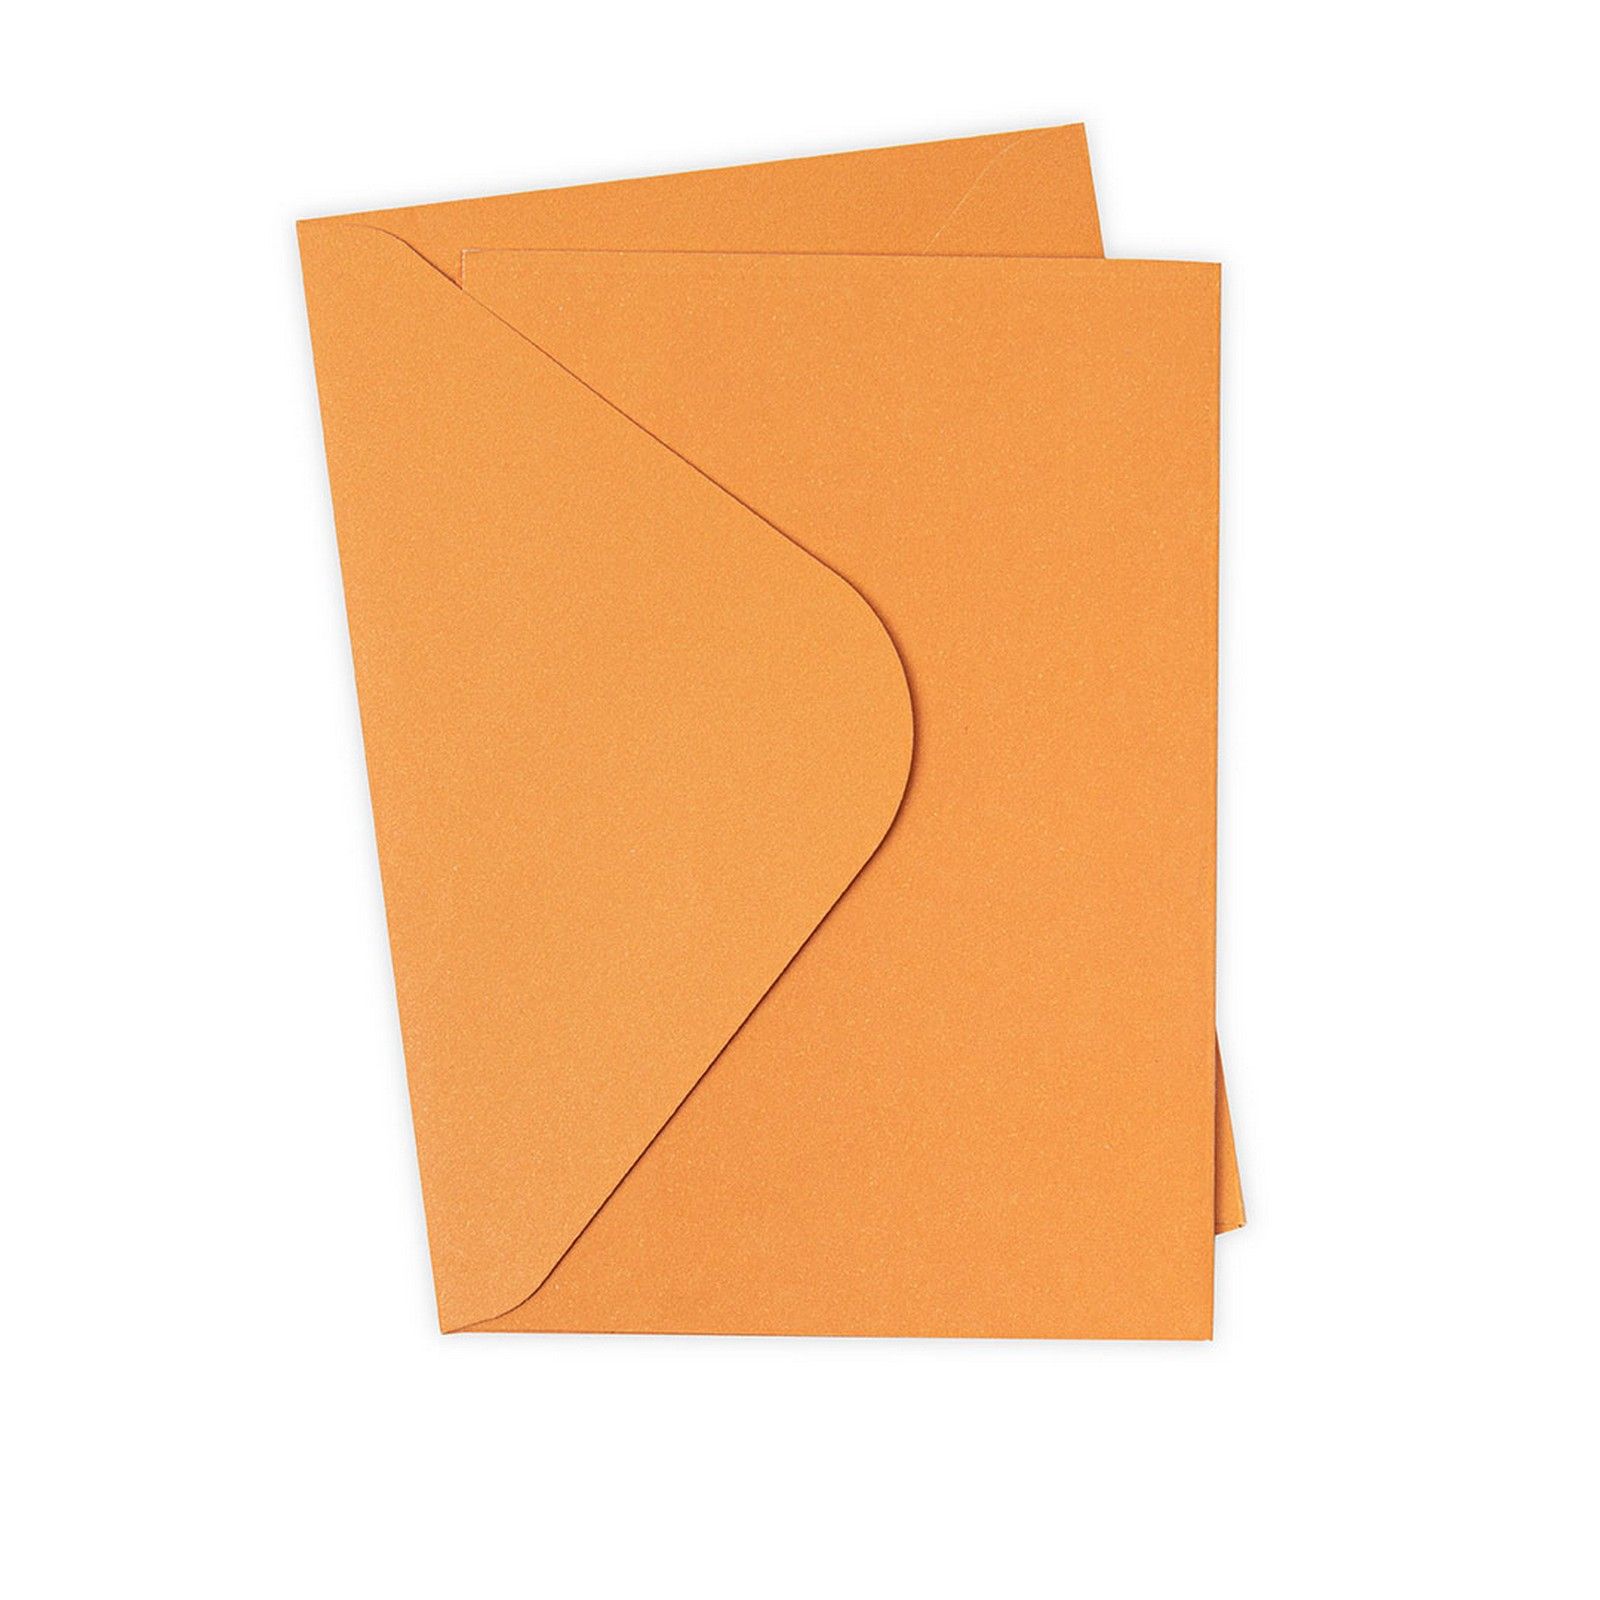 Sizzix • Paquete de tarjetas y sobres Surfacez A6, naranja quemado, 10 unidades